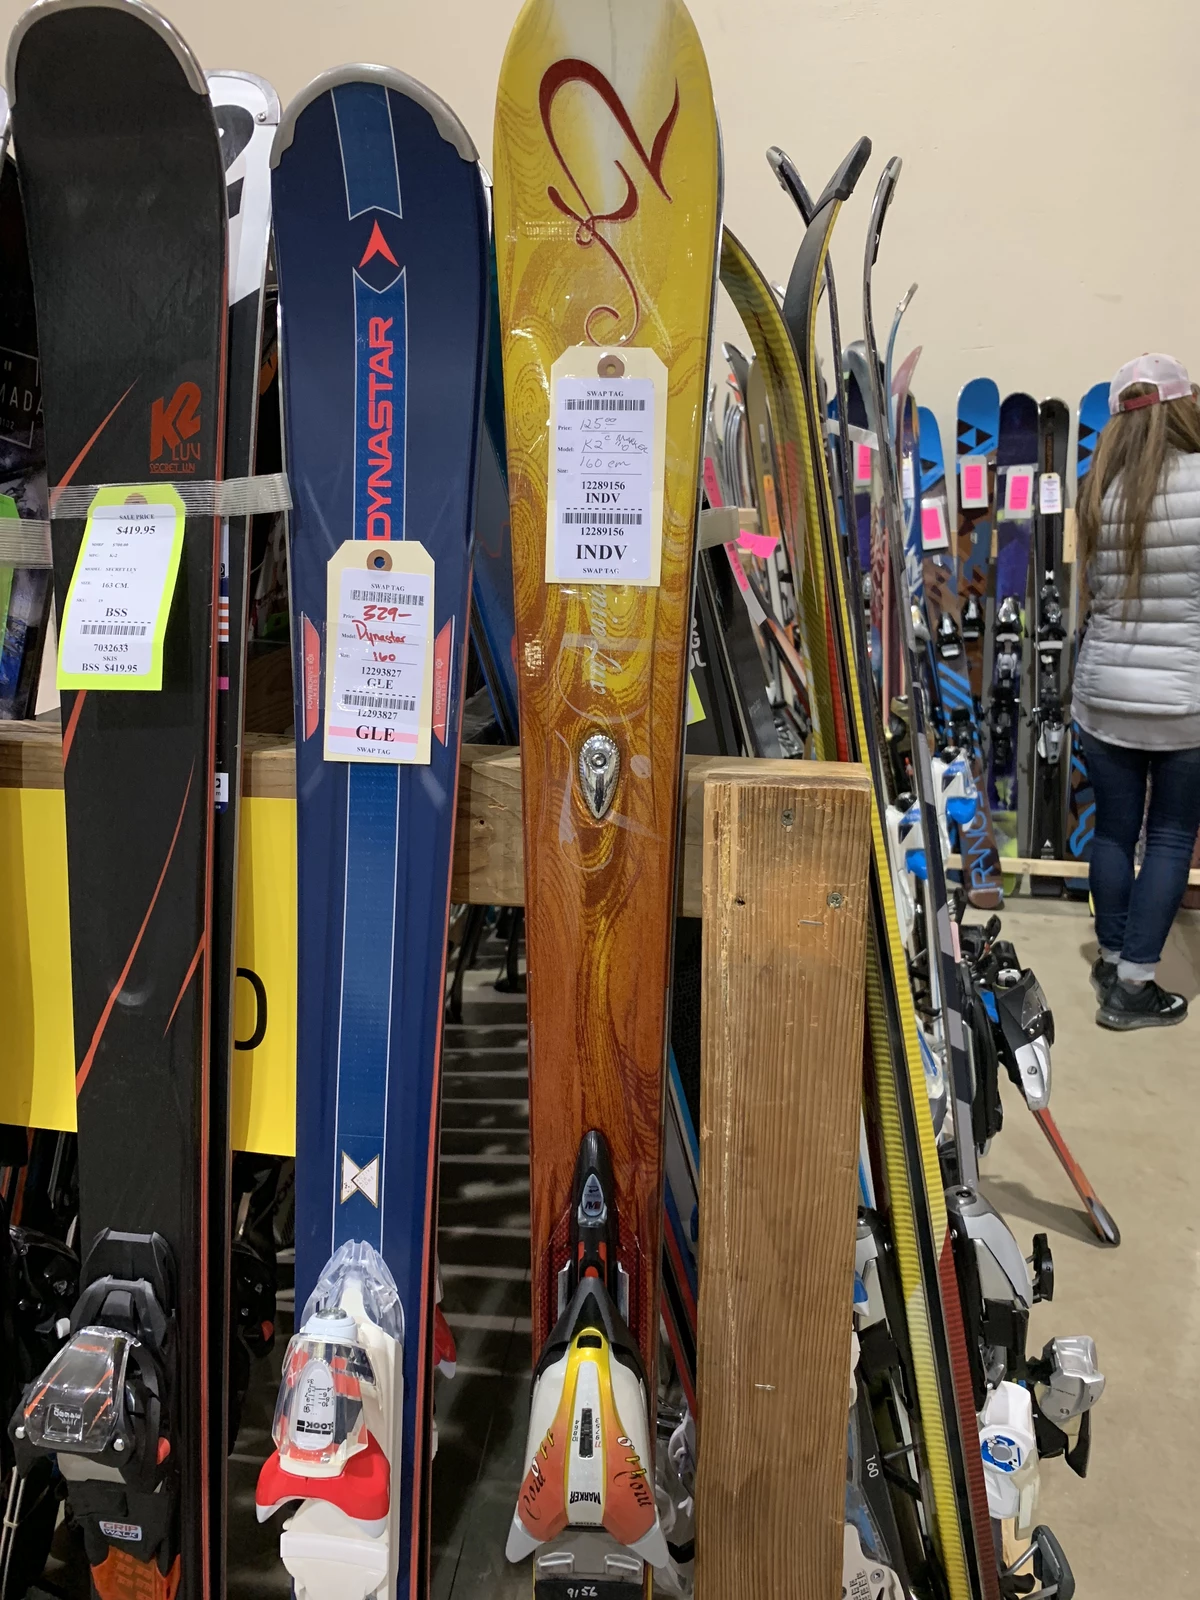 Hundreds Line Up for Ski Swap at Expo Idaho